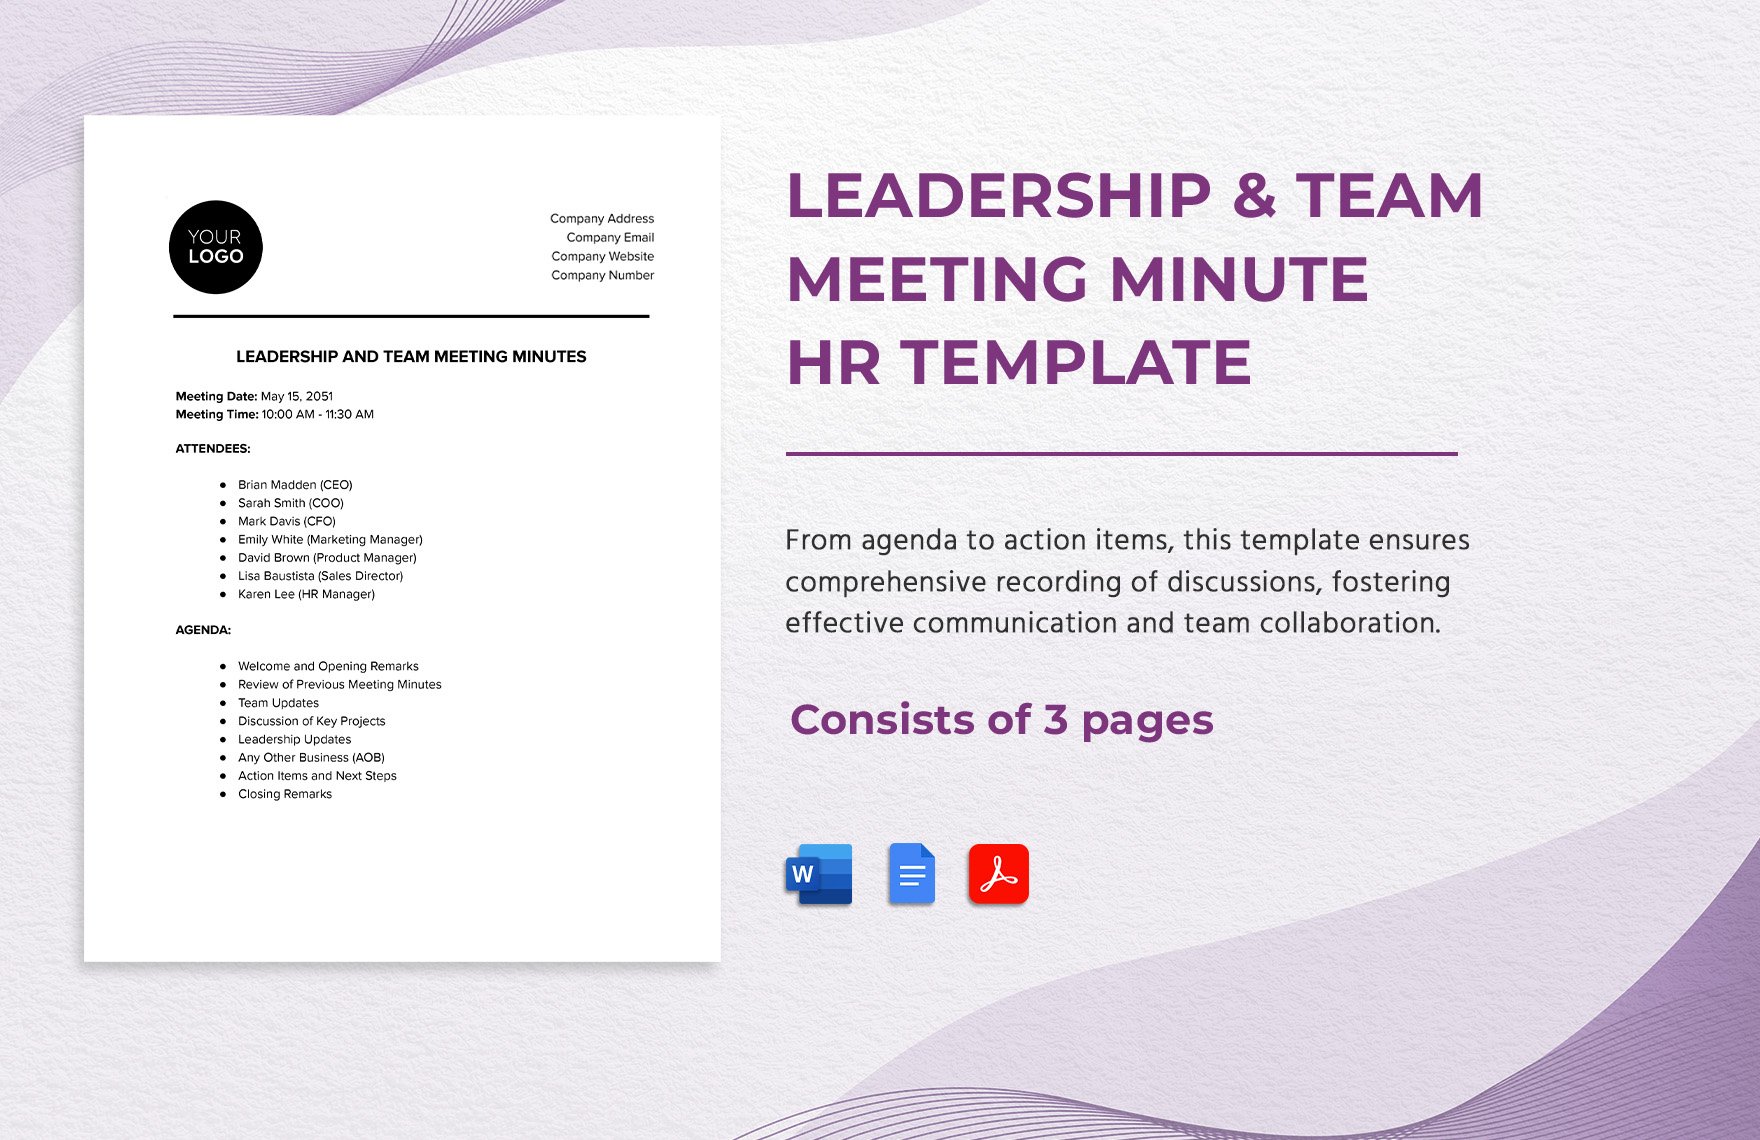 Leadership & Team Meeting Minute HR Template